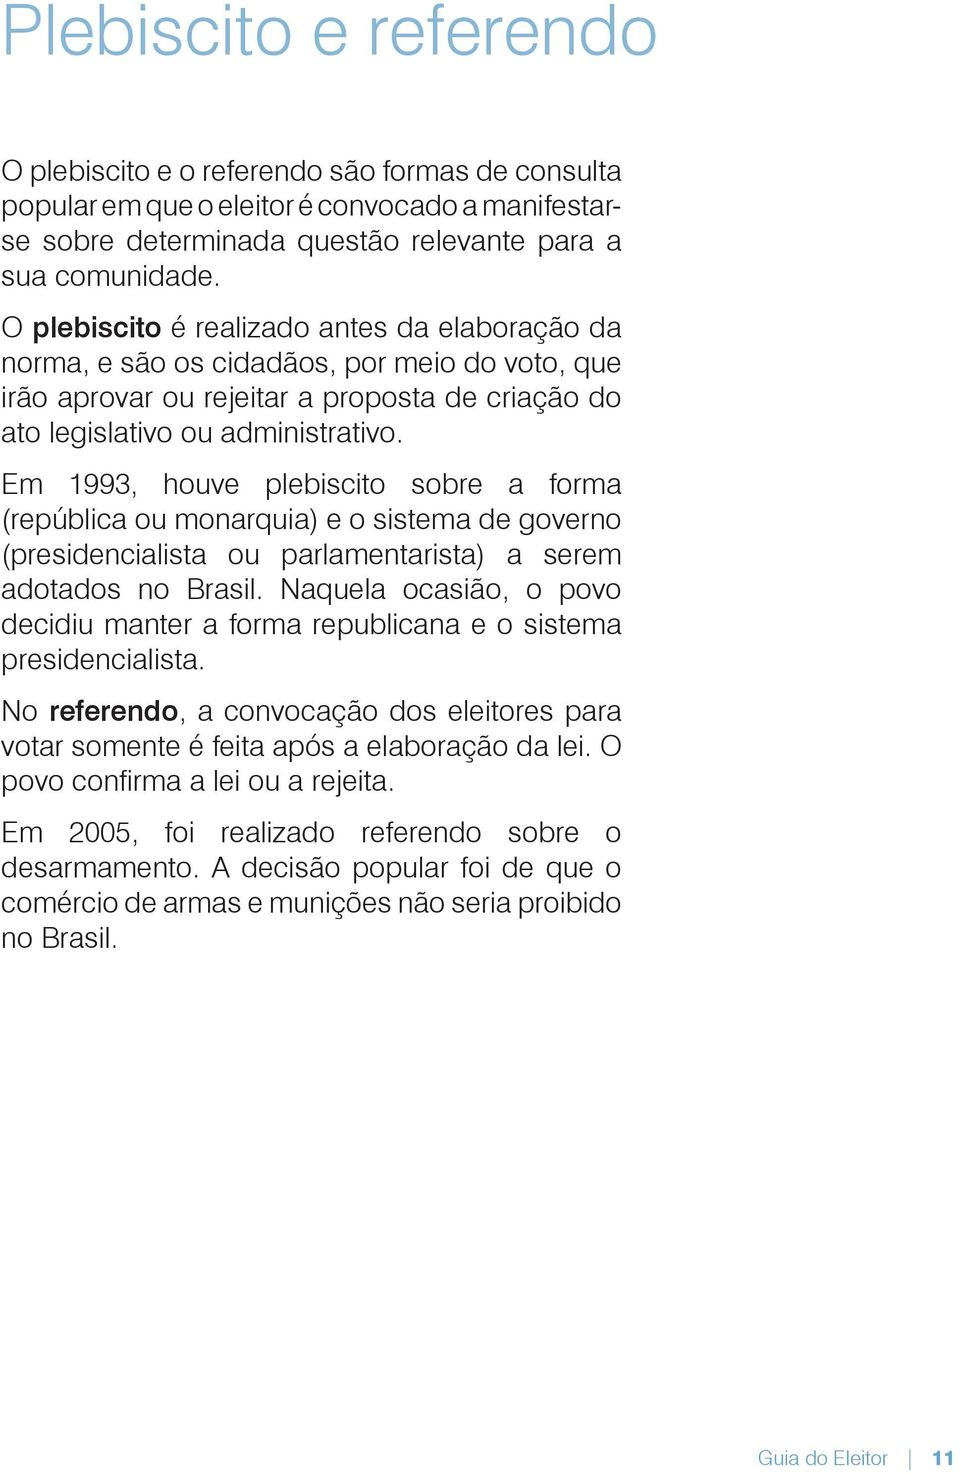 Em 1993, houve plebiscito sobre a forma (república ou monarquia) e o sistema de governo (presidencialista ou parlamentarista) a serem adotados no Brasil.